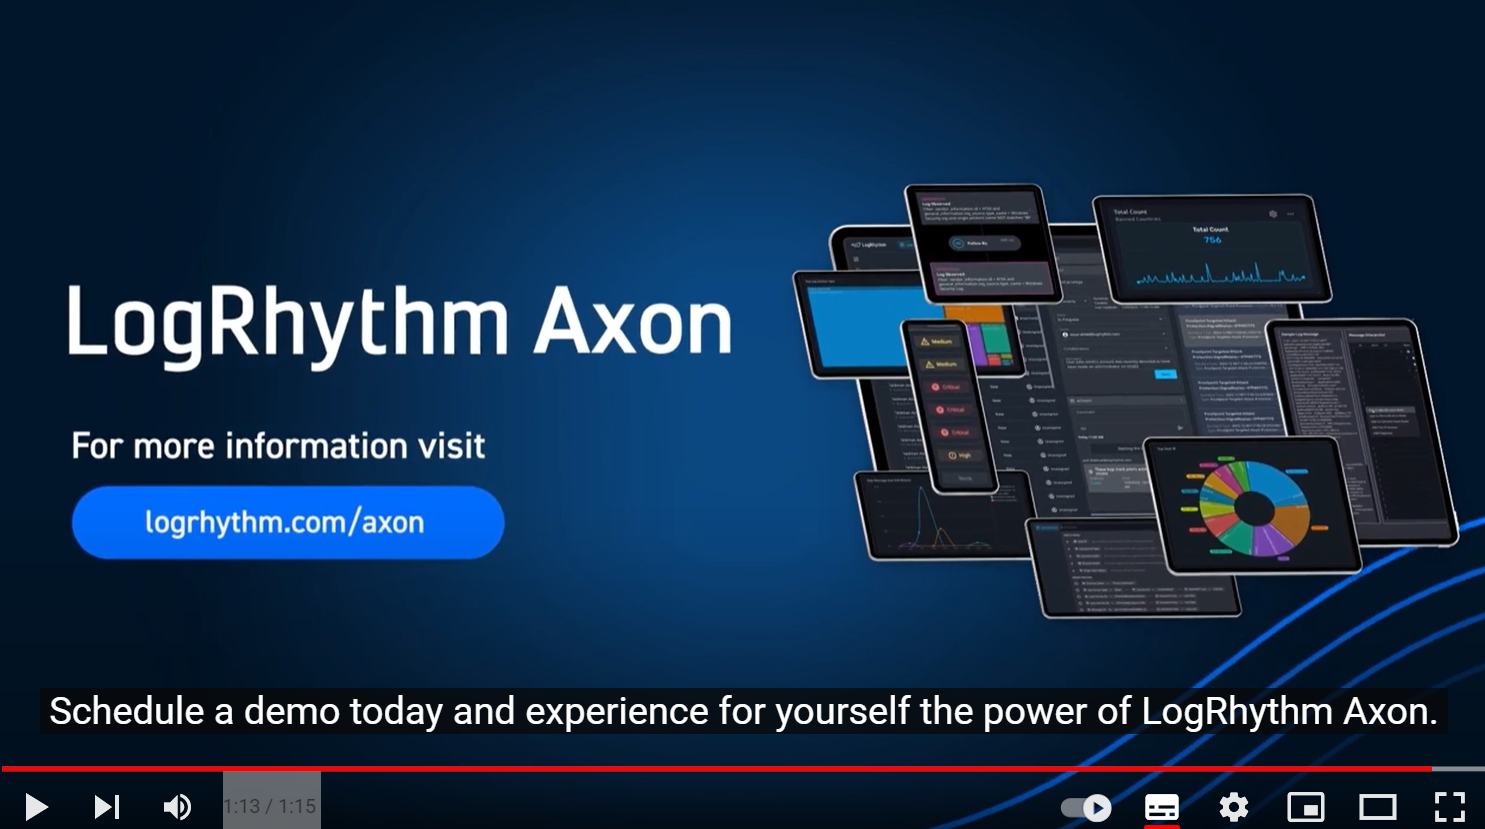 >Meet LogRhythm Axon!